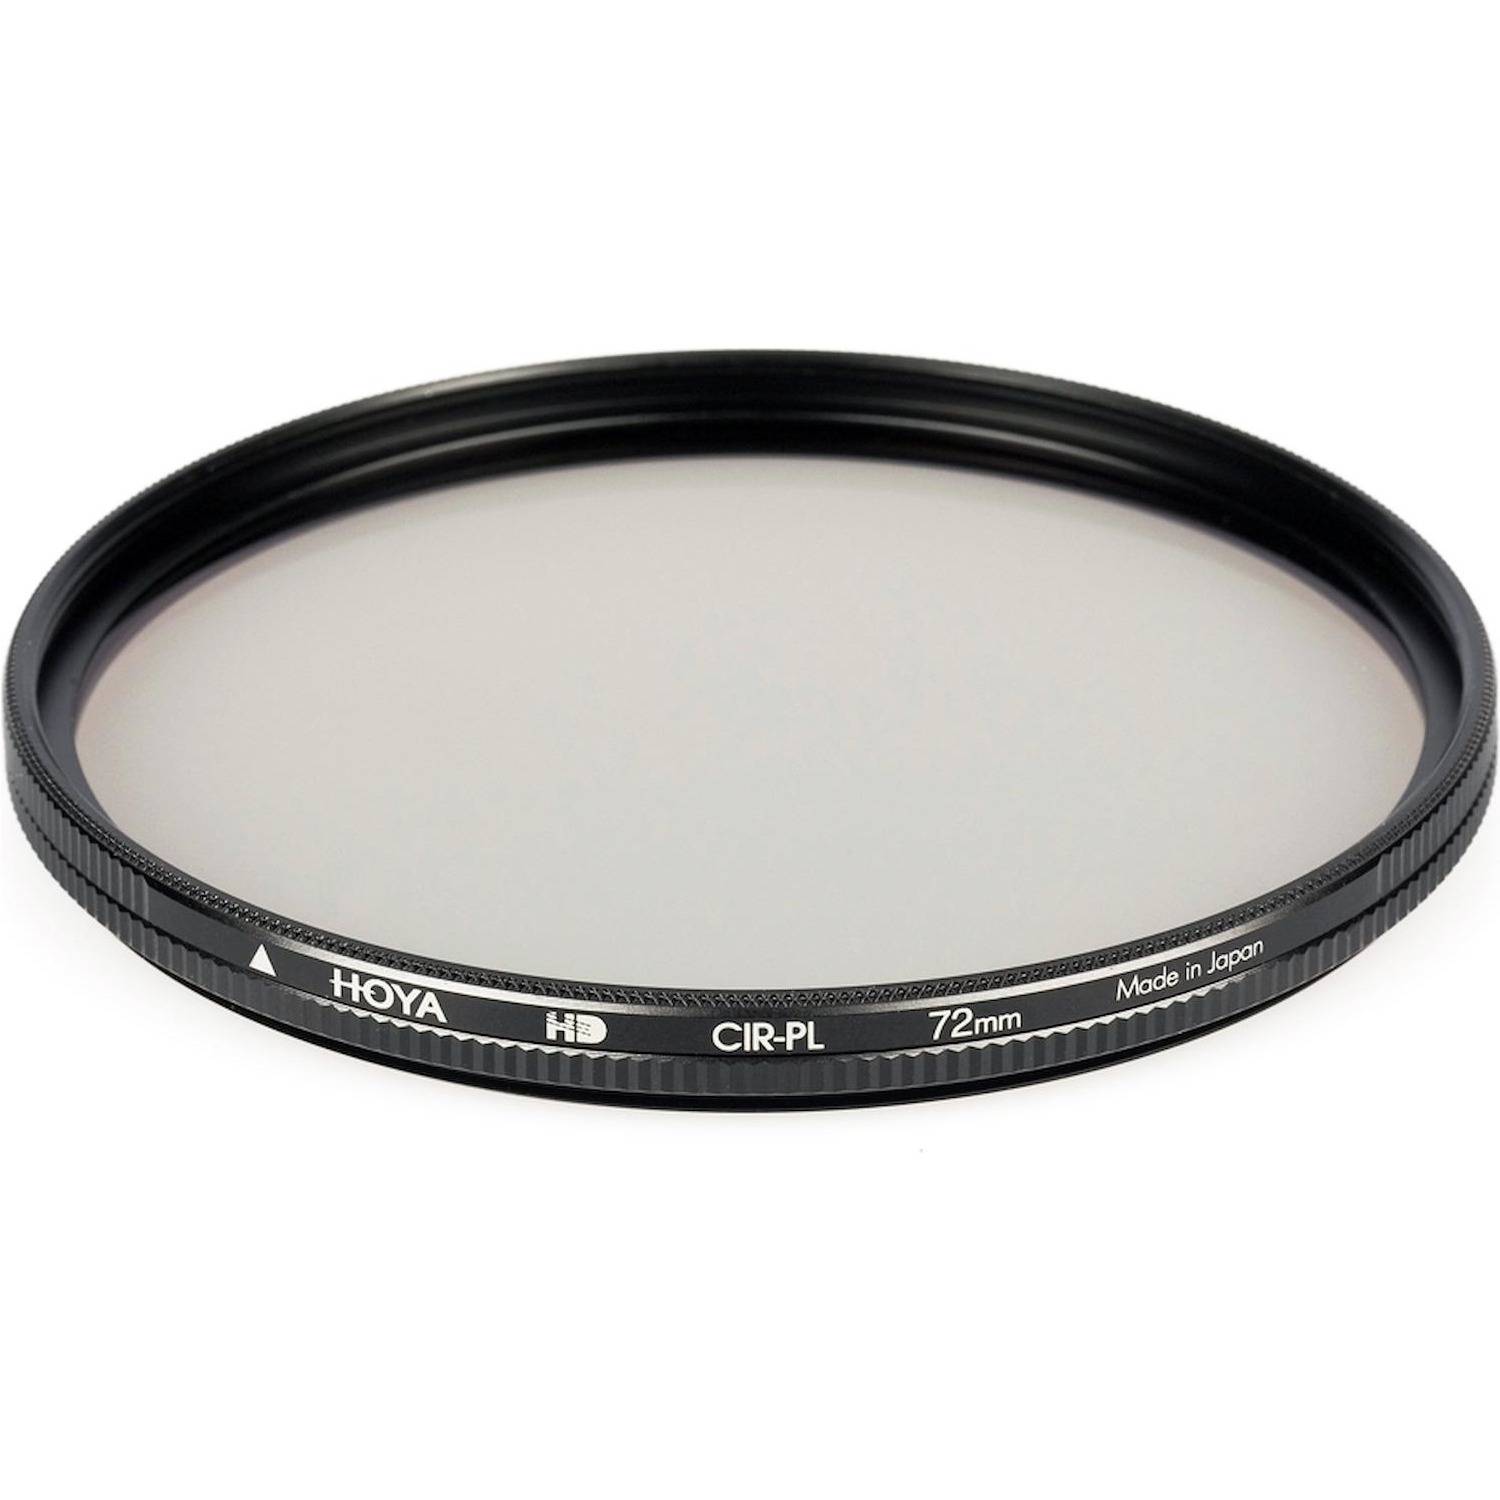 Immagine per Filtro polarizzatore circolare Hoya HD 72mm da DIMOStore